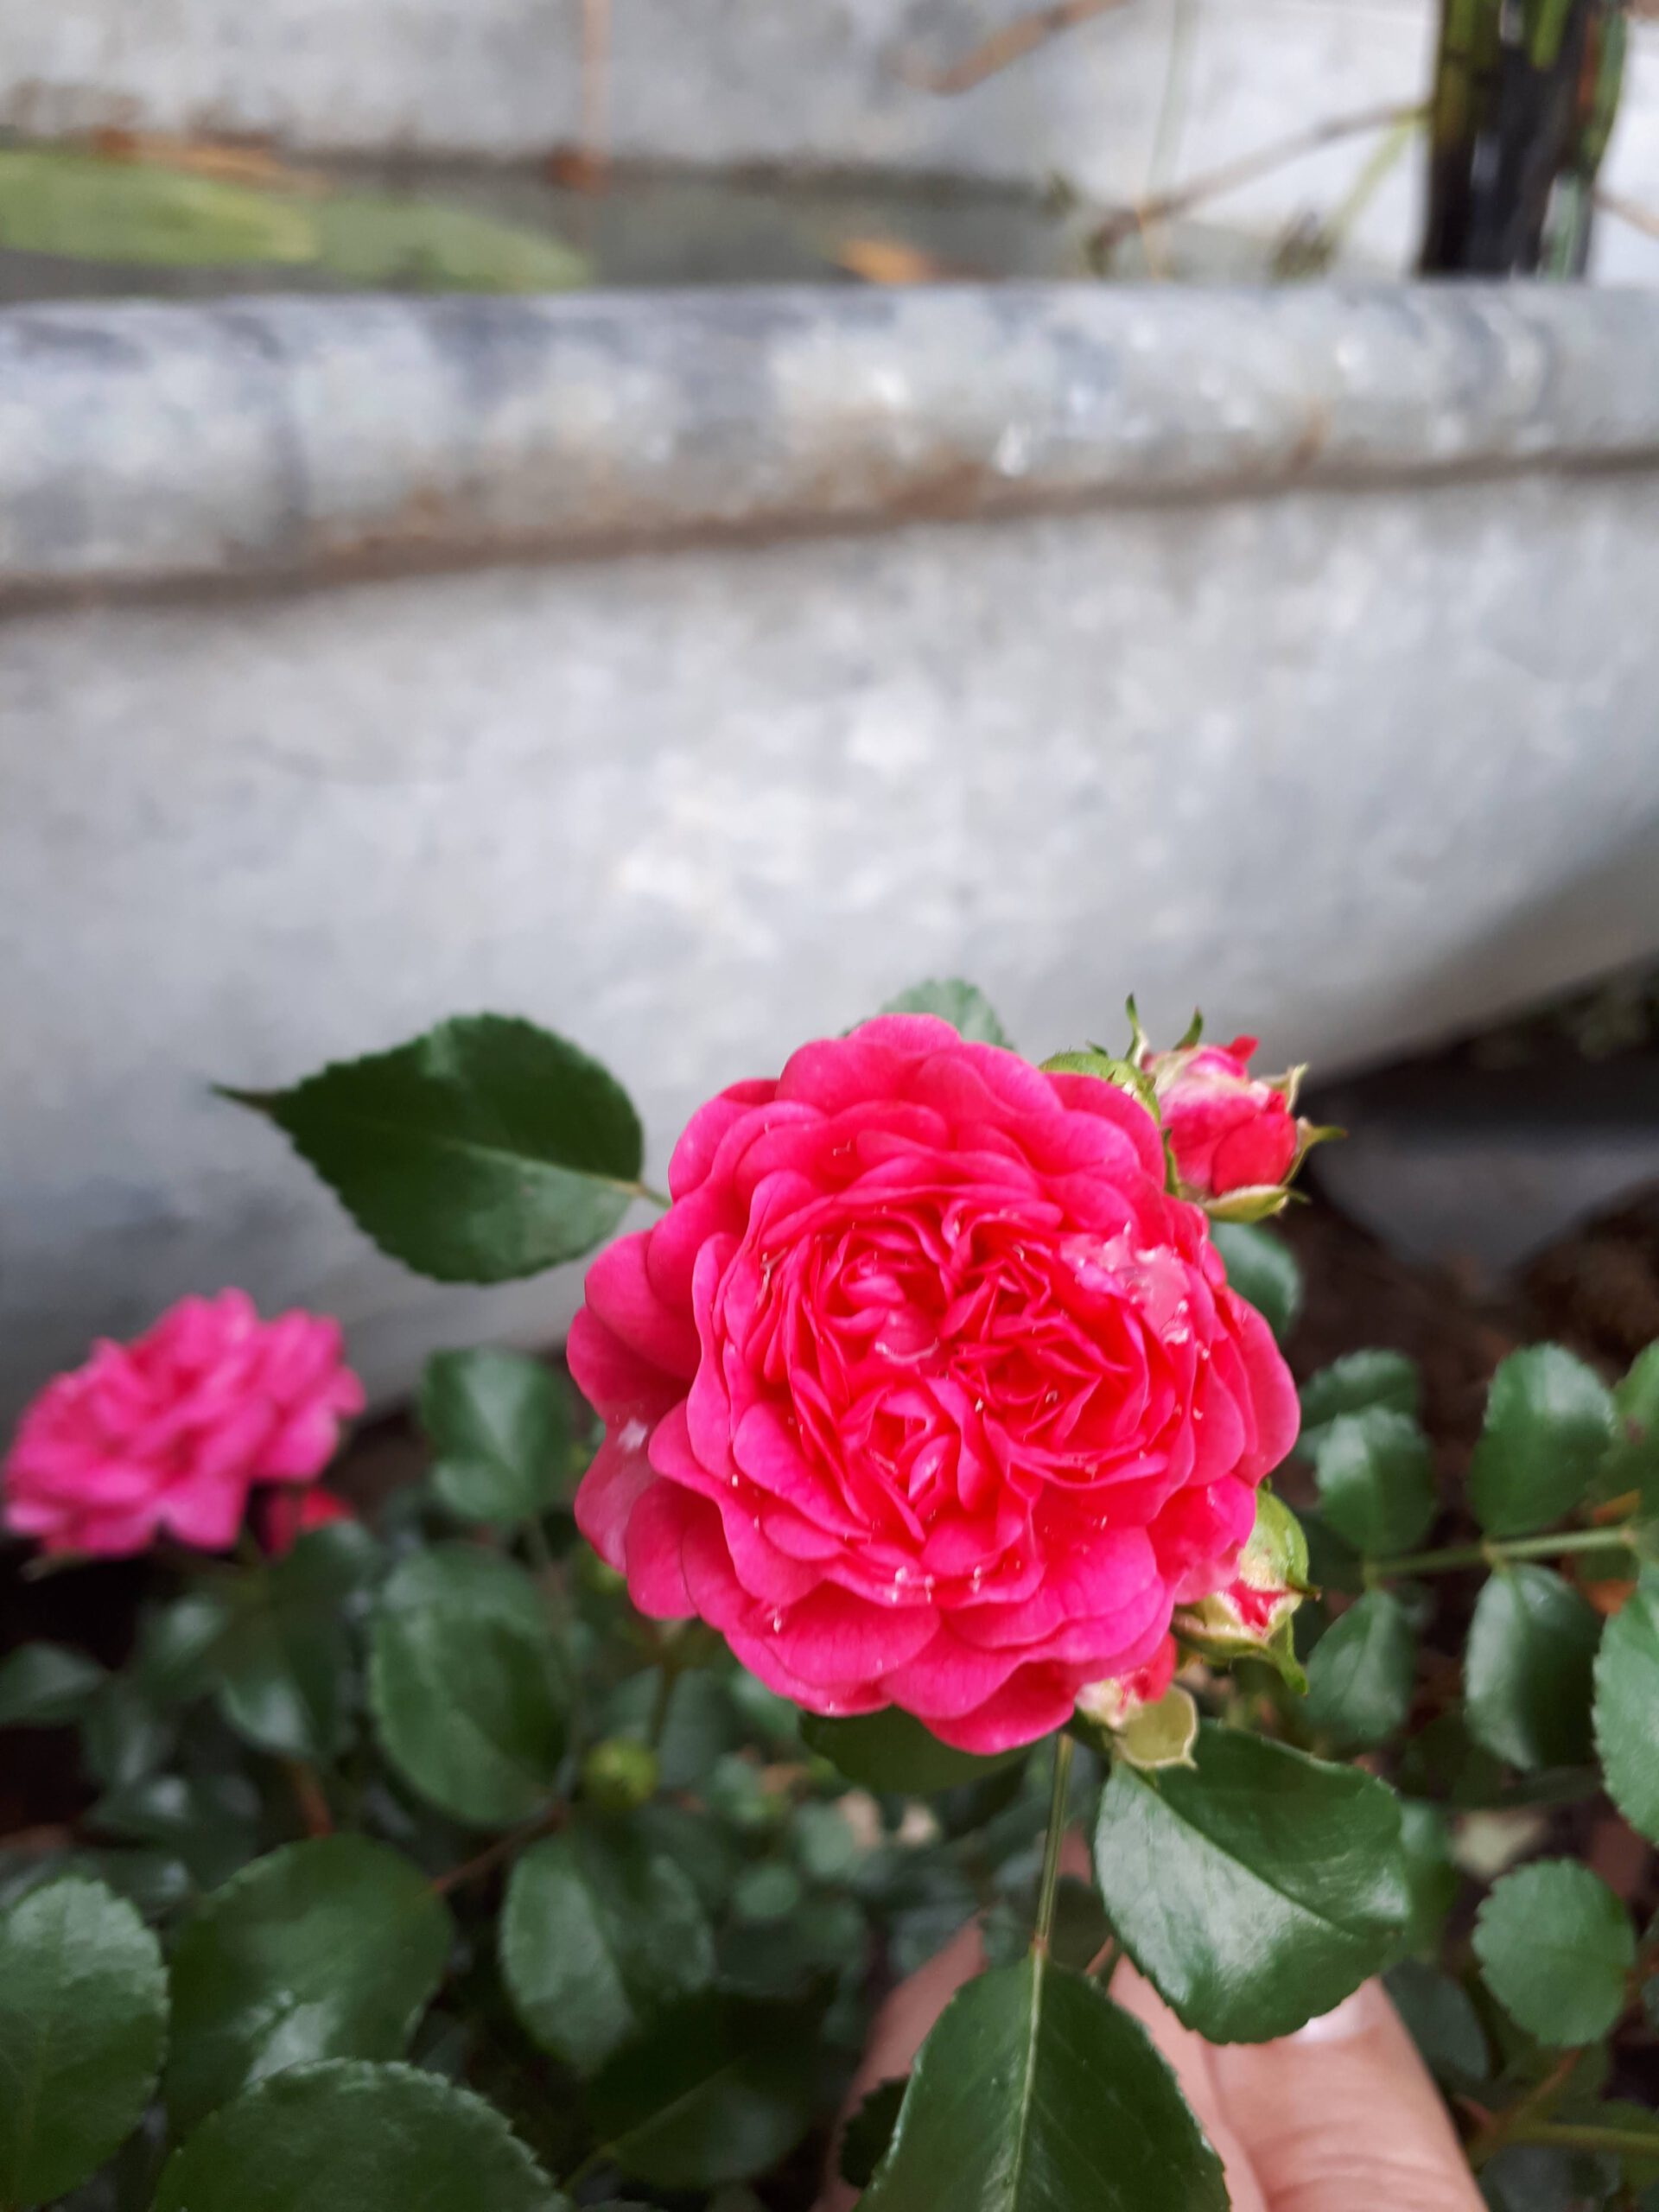 Meine Rosensorten, hier die Zwergrose Pepita in kräftigem Pink.